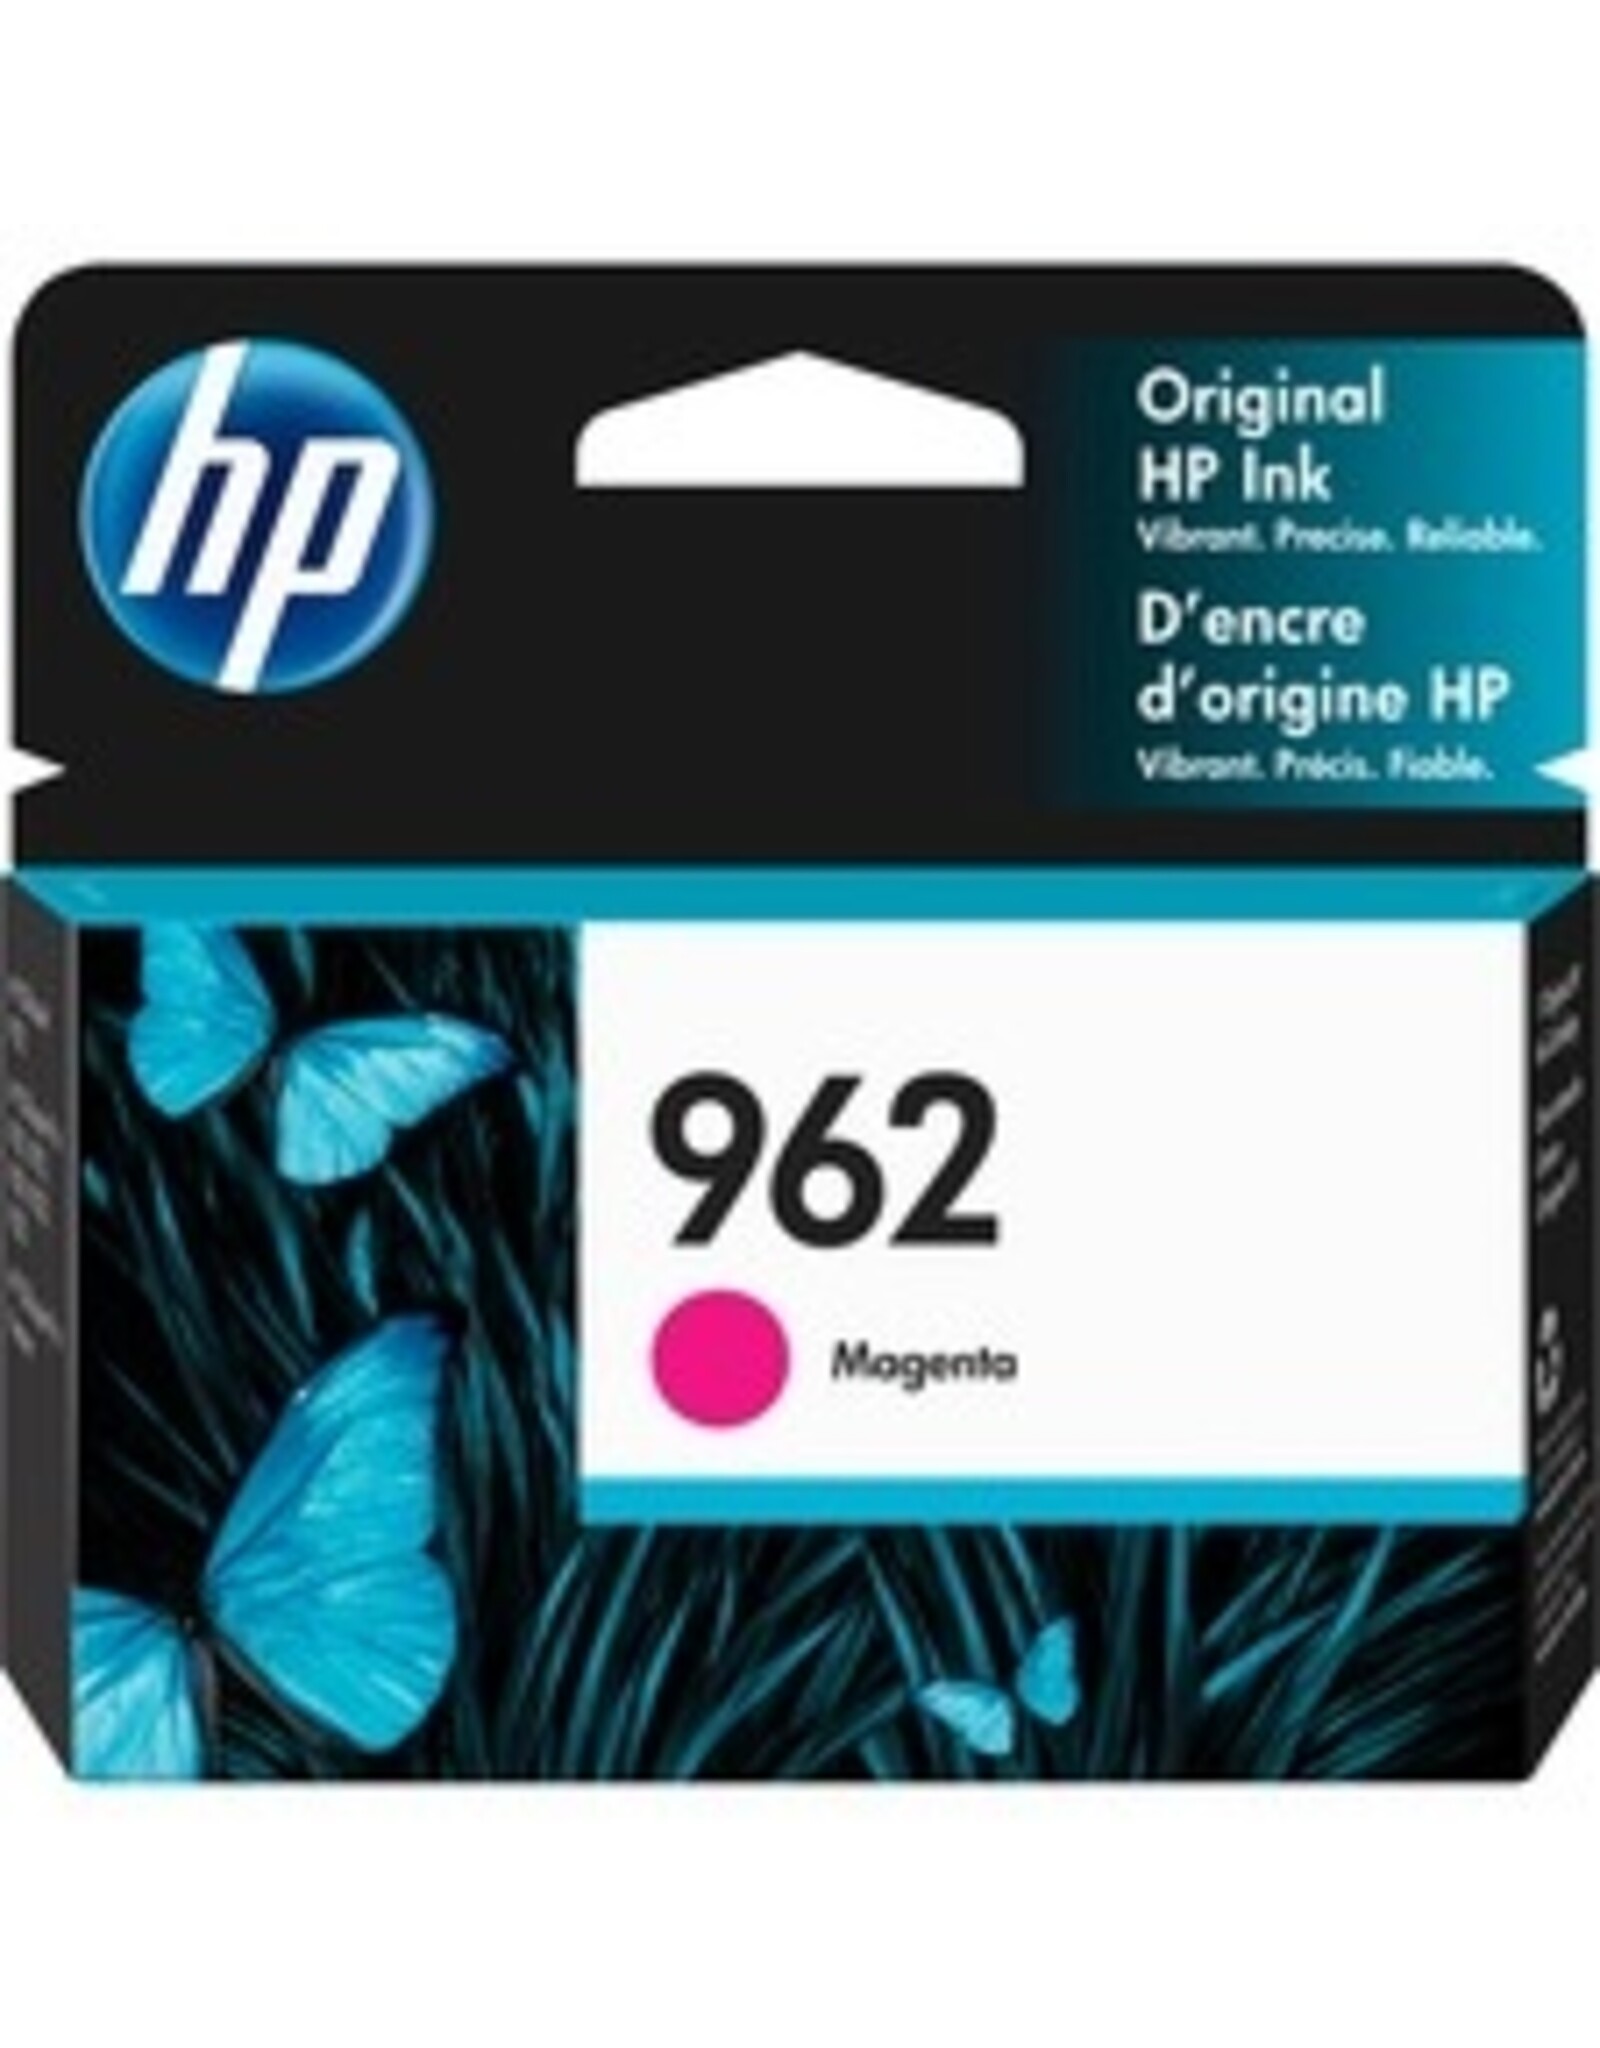 HP HP 962 Original Ink Cartridge - Magenta